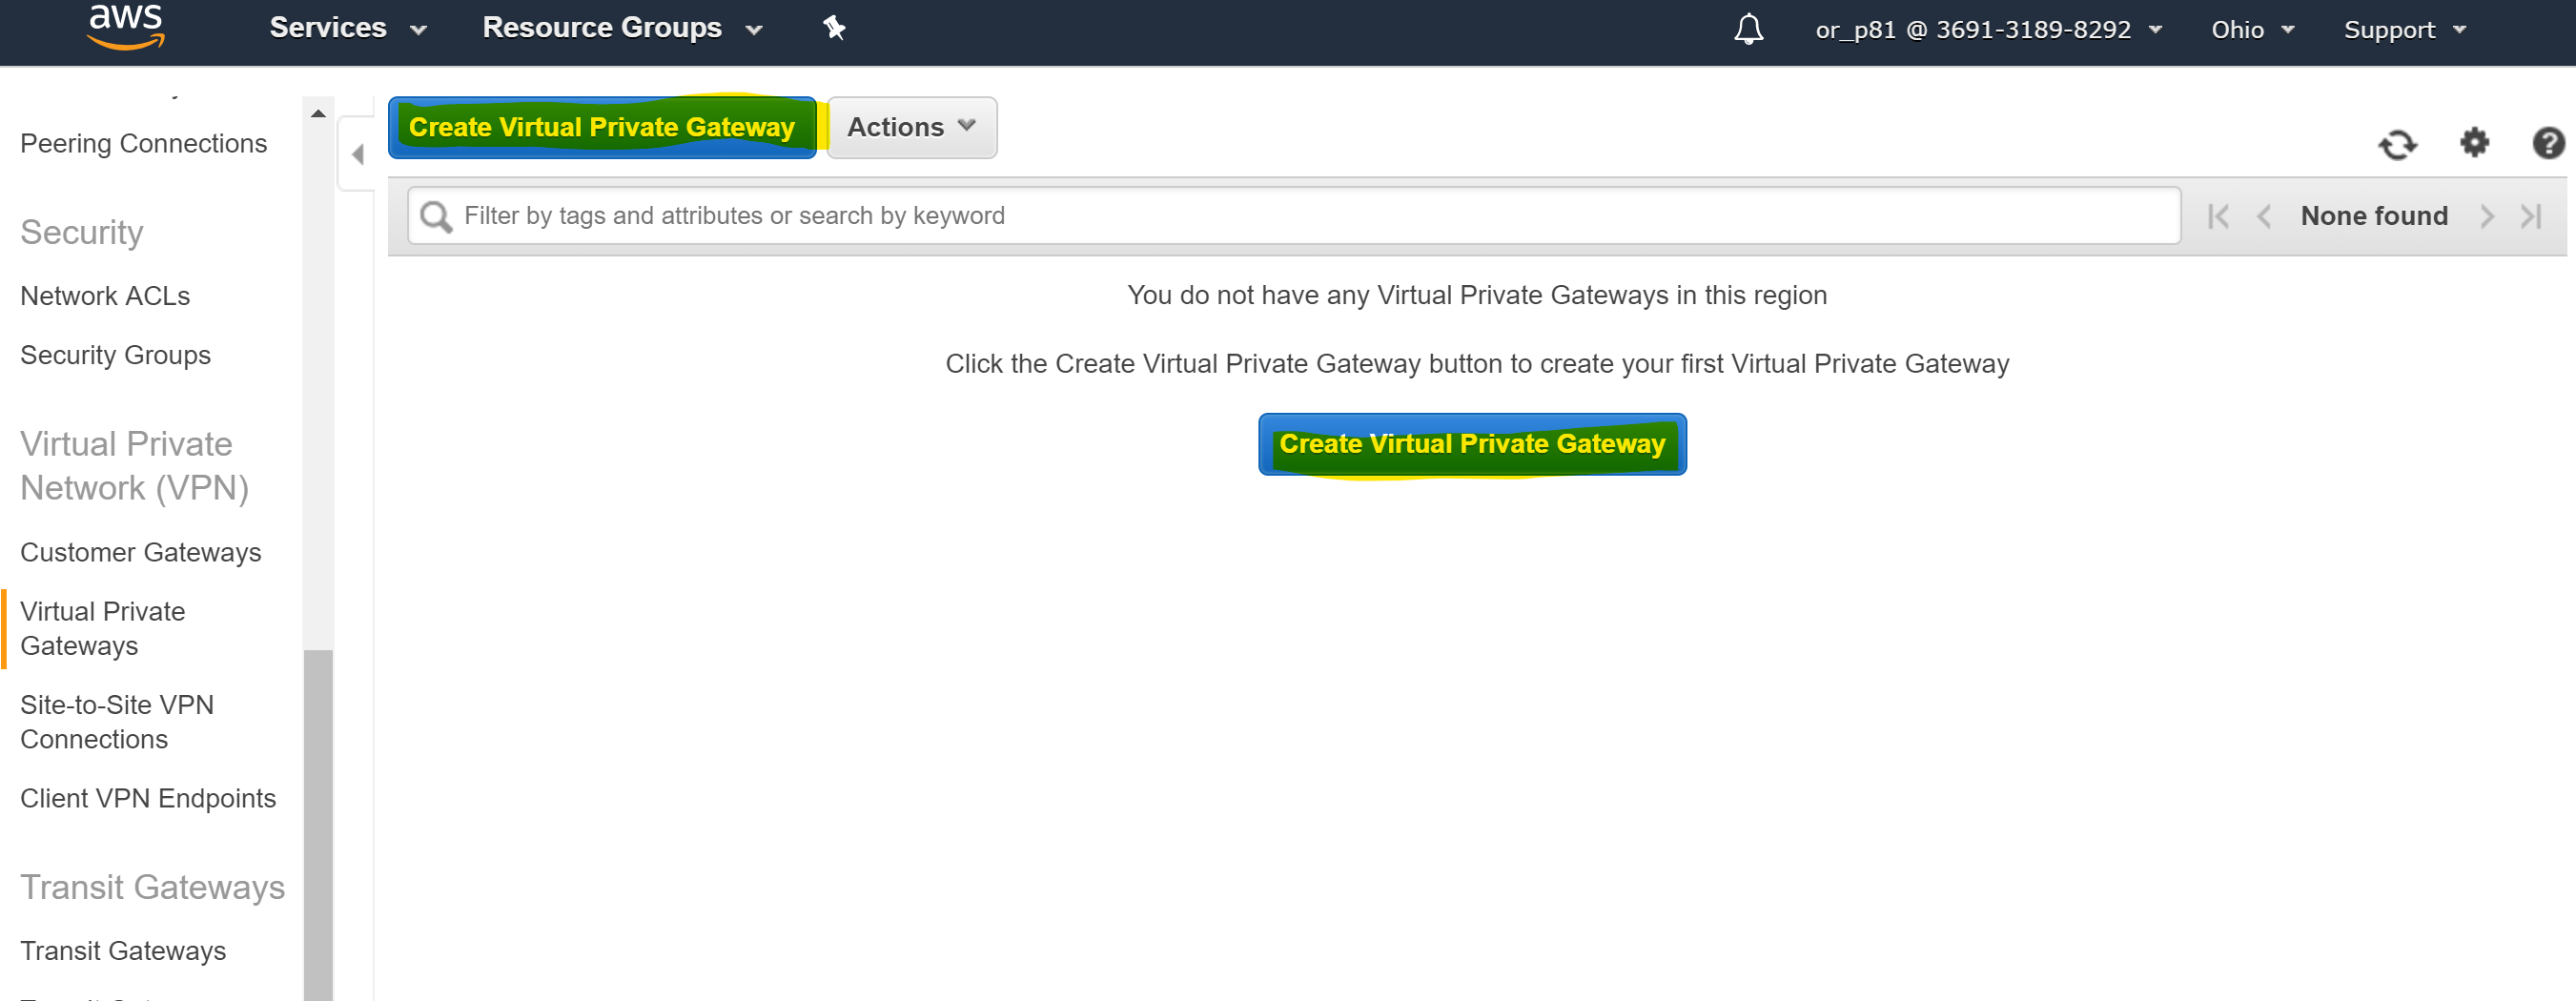 virtual gateway login page